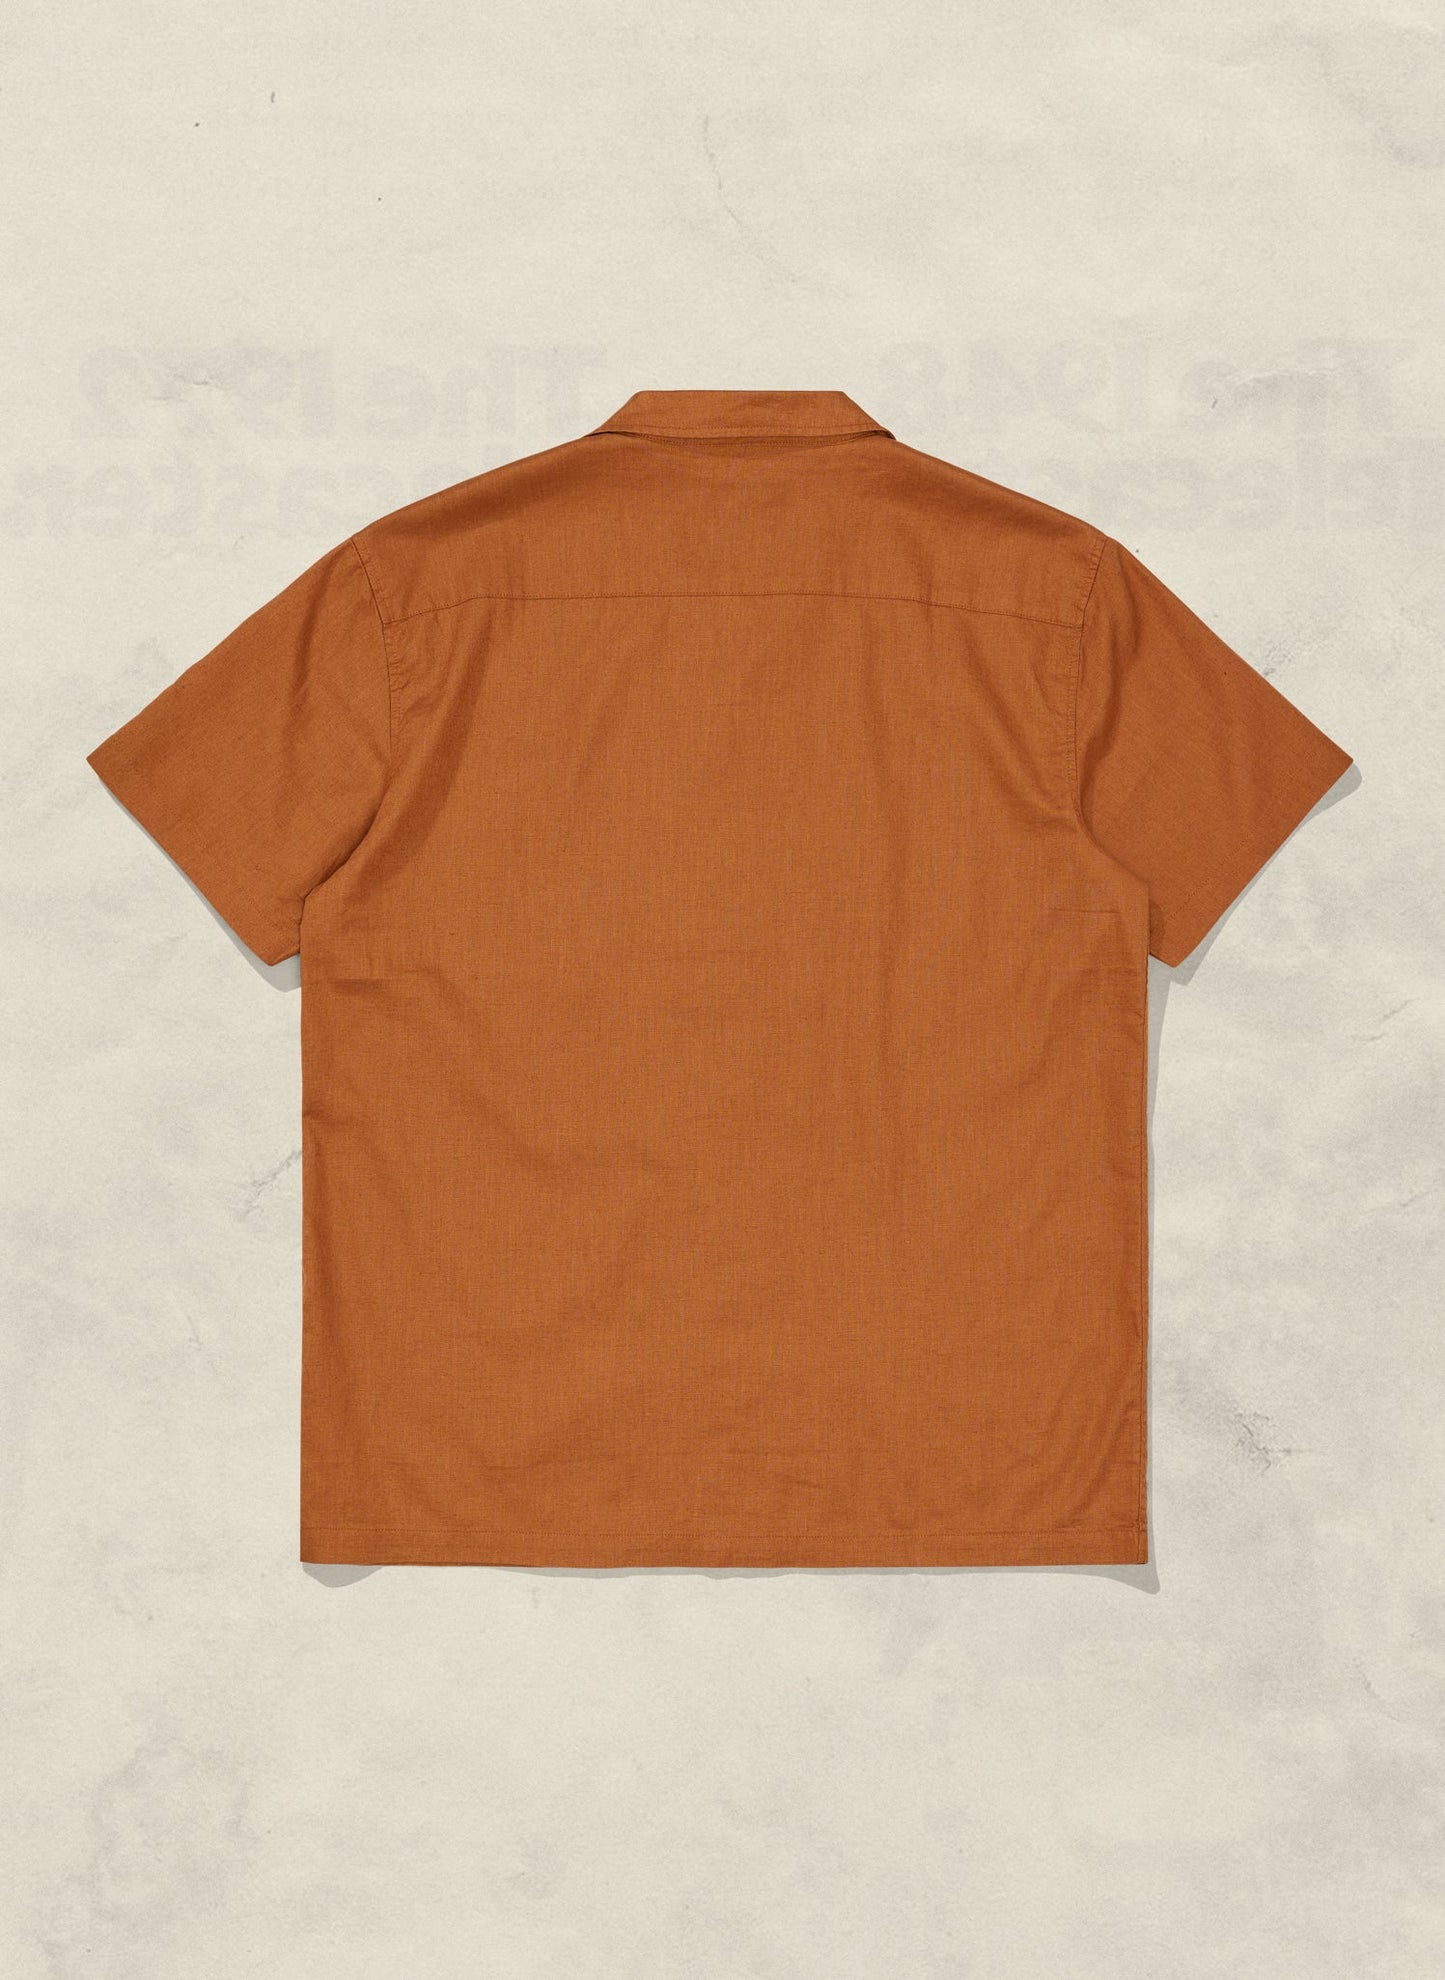 Vacation Hemp Button Up Shirt - Rust